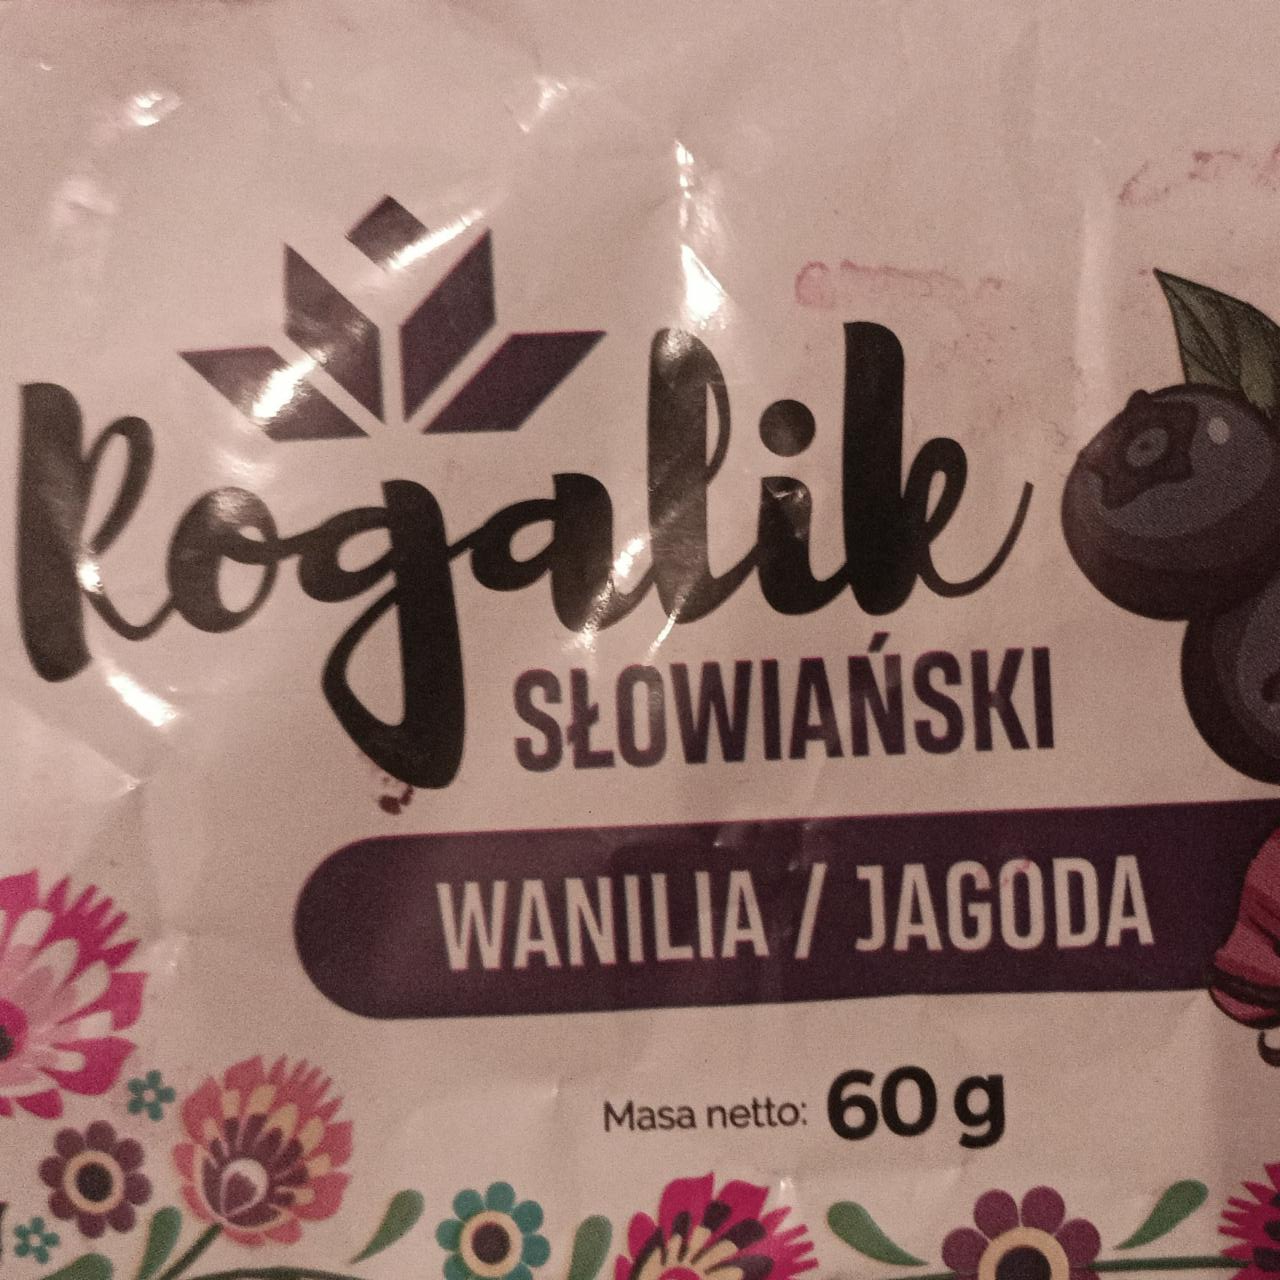 Zdjęcia - Rogalik Słowiański wanilia / jagodowa